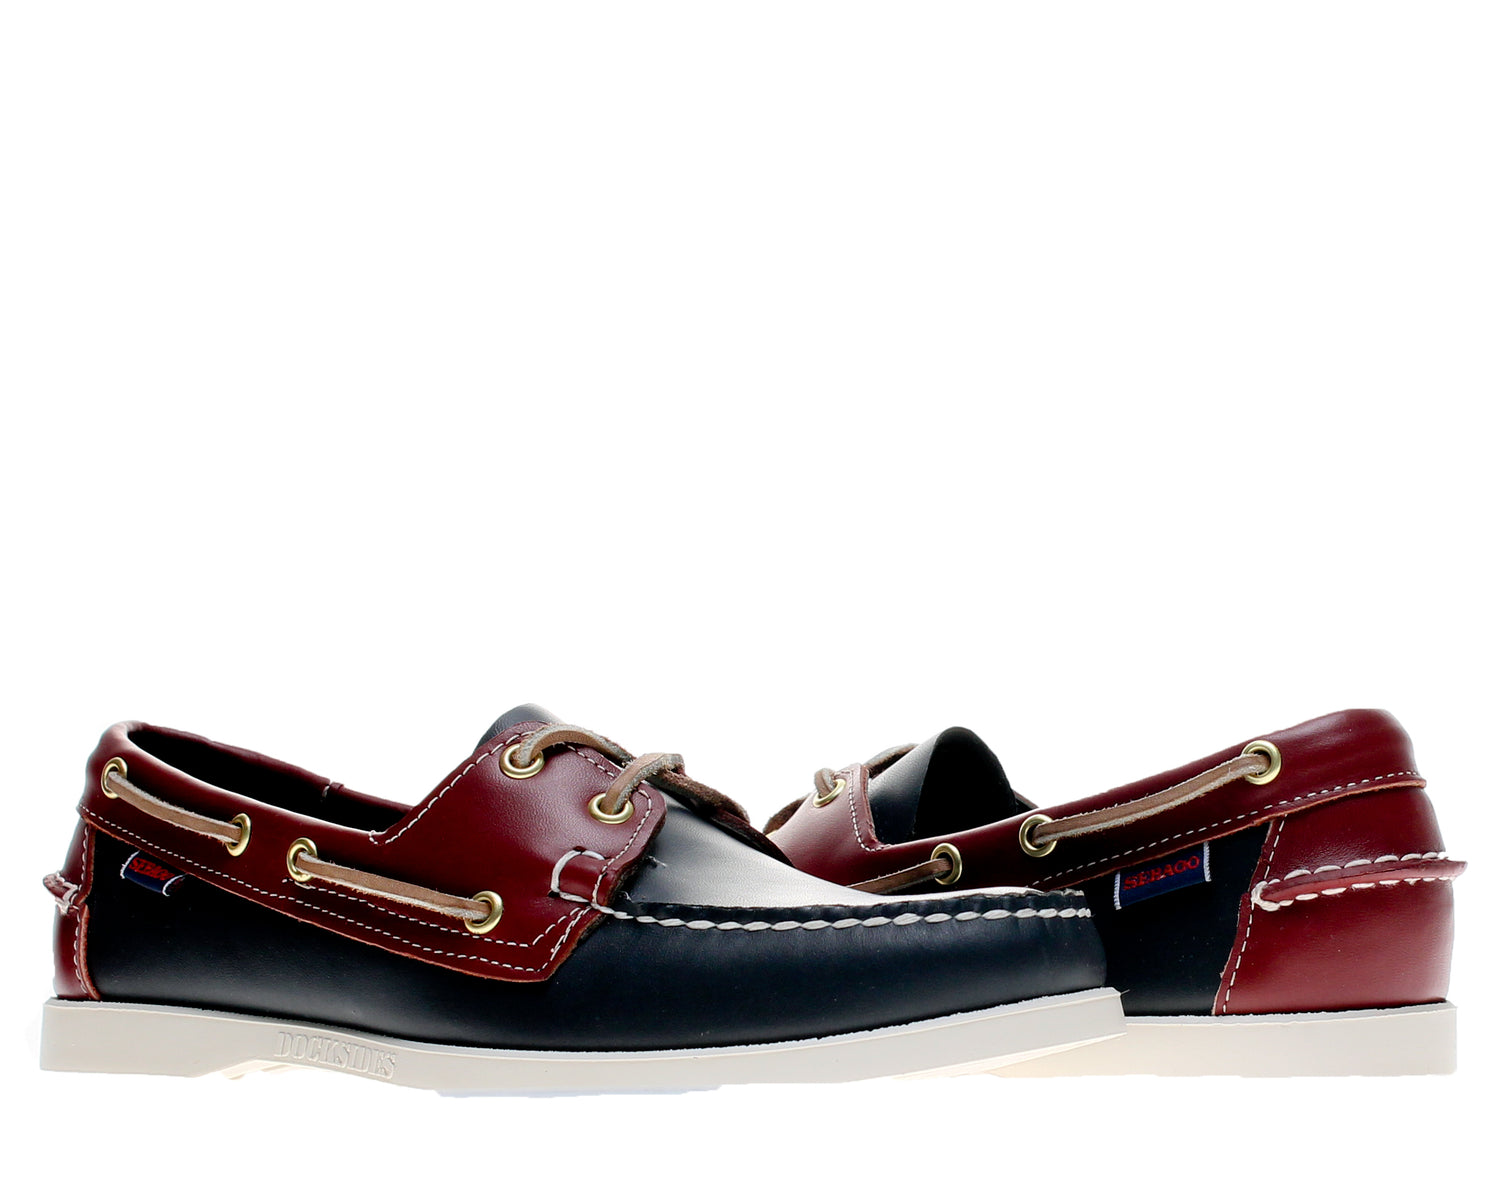 Sebago Spinnaker Men's Boat Shoes